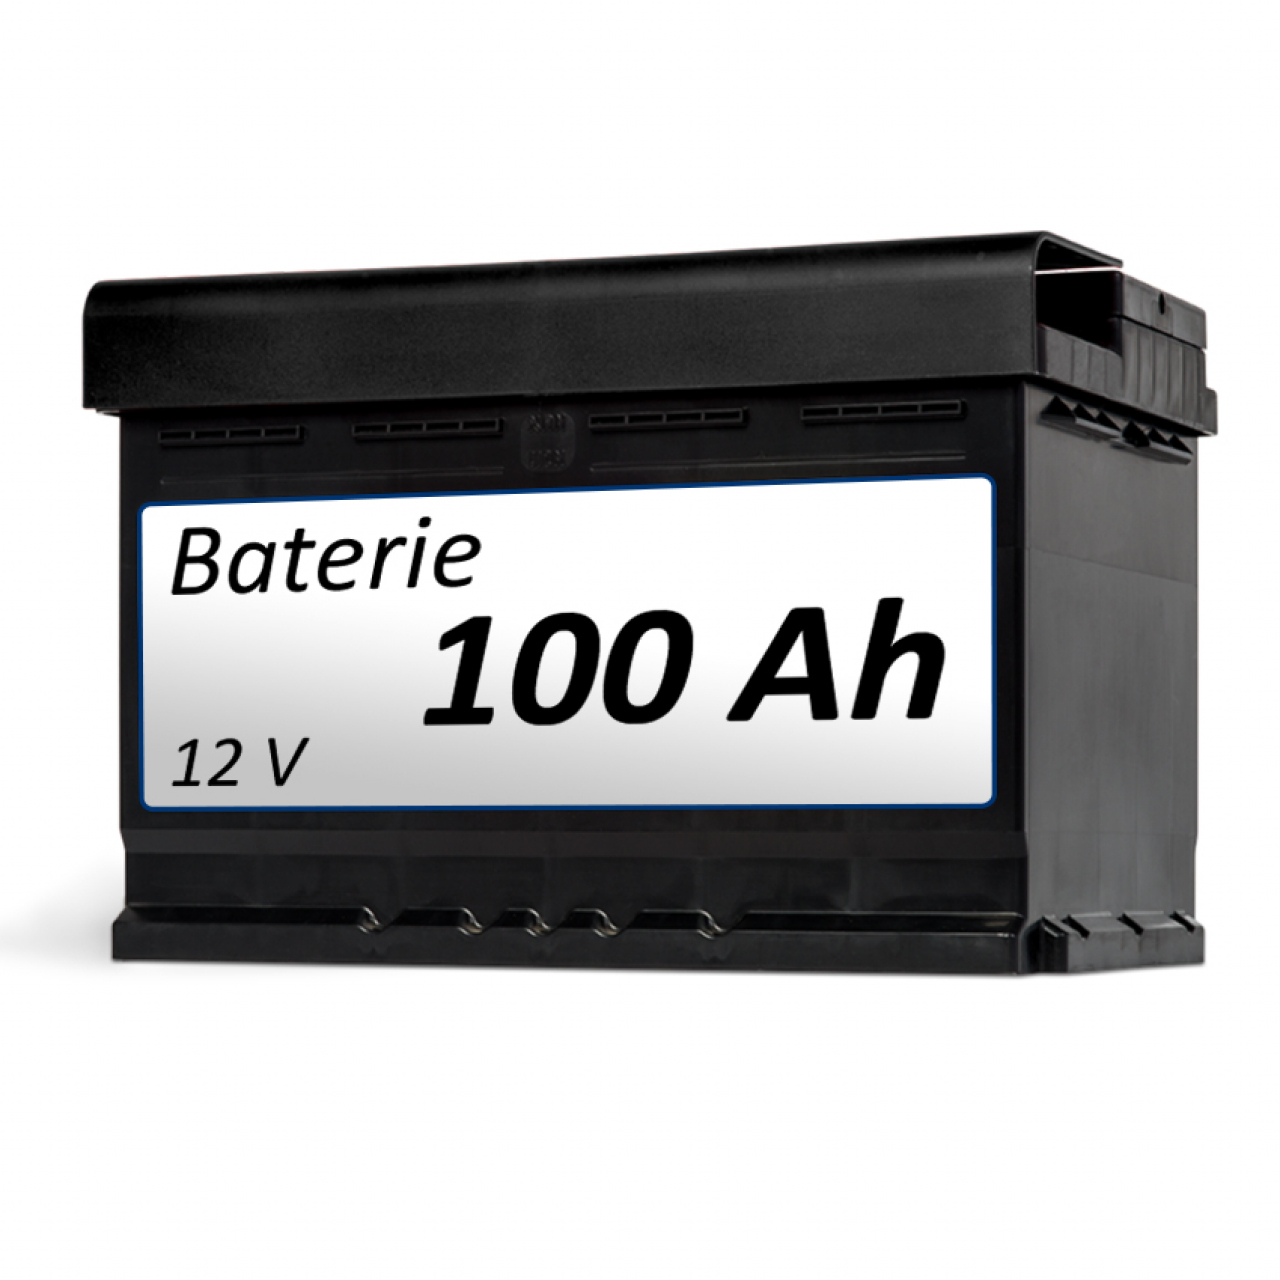 Baterie k vozíku Baterie 100 Ah - k vozíku foto